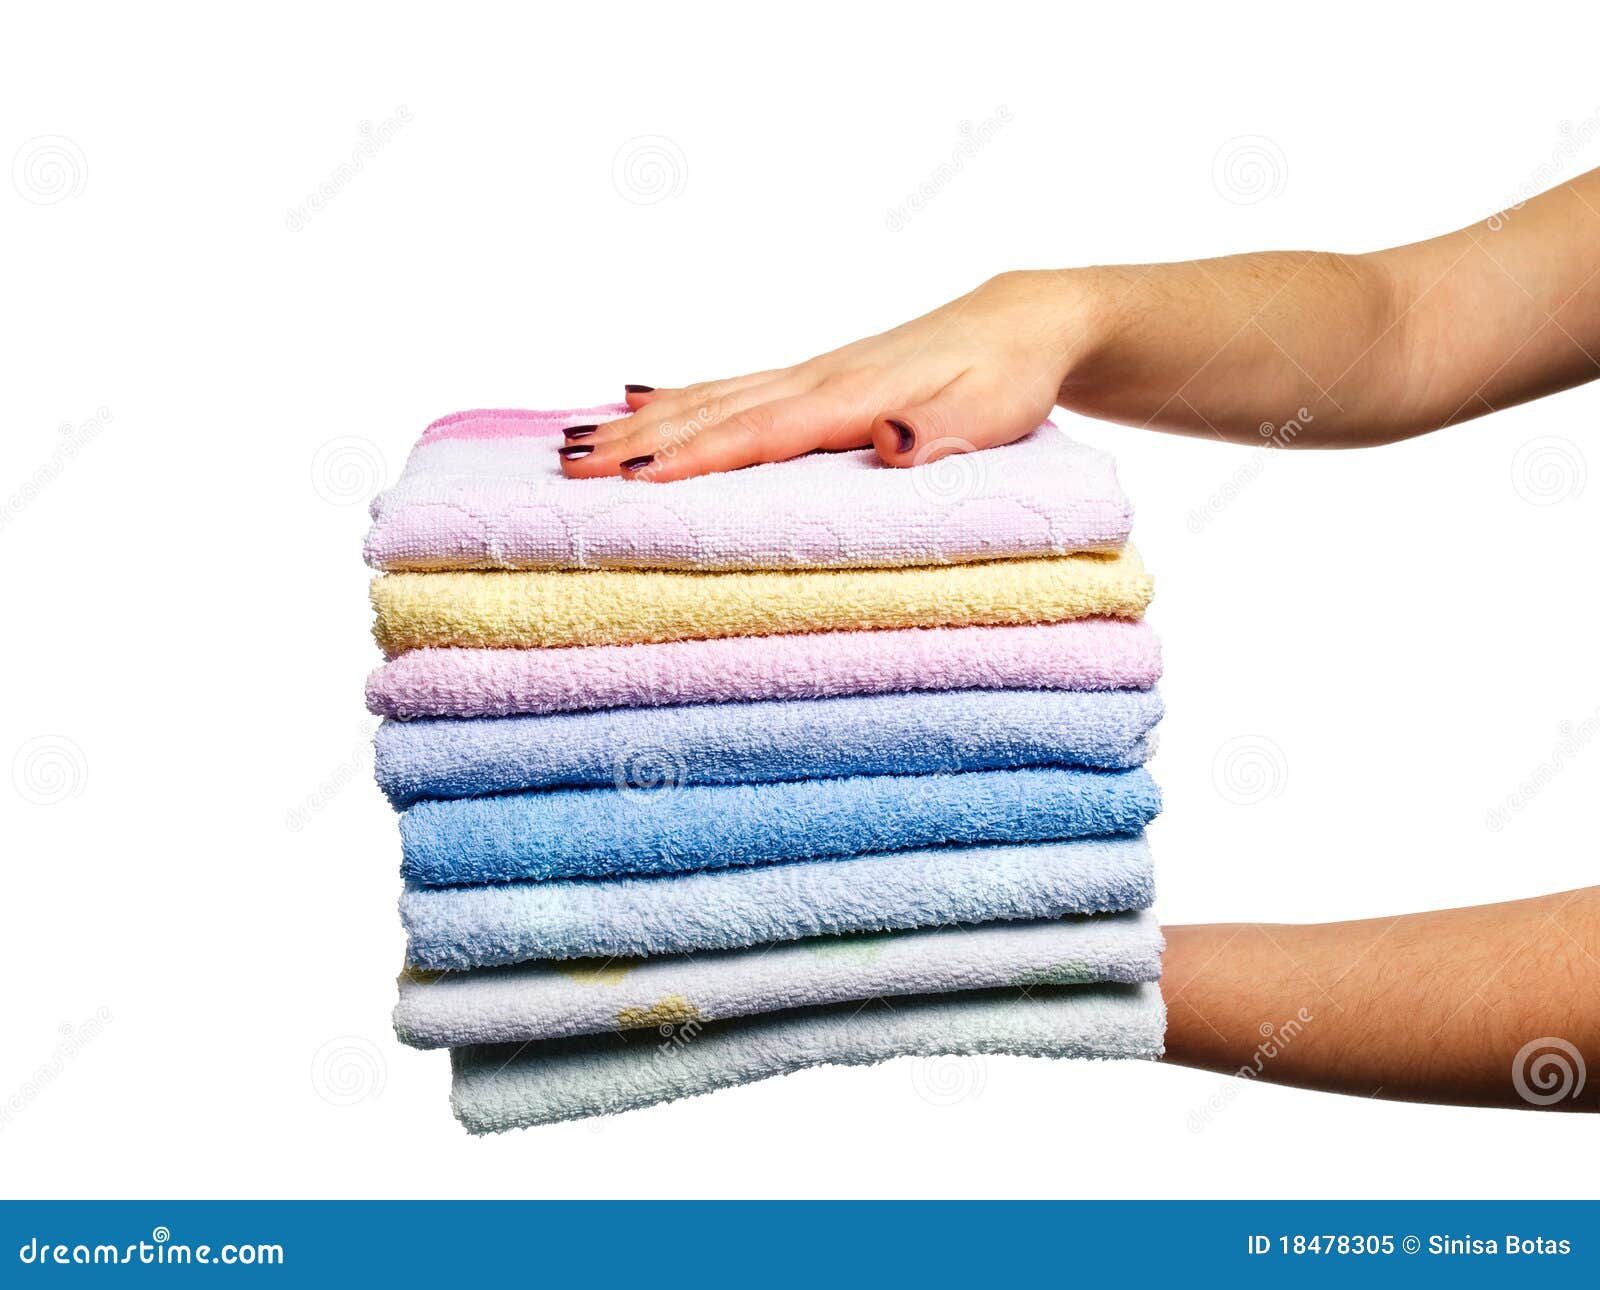 Полотенца нужно менять. Стопка полотенец. Чистые полотенца. Стопка чистых полотенец. Полотенце на белом фоне.